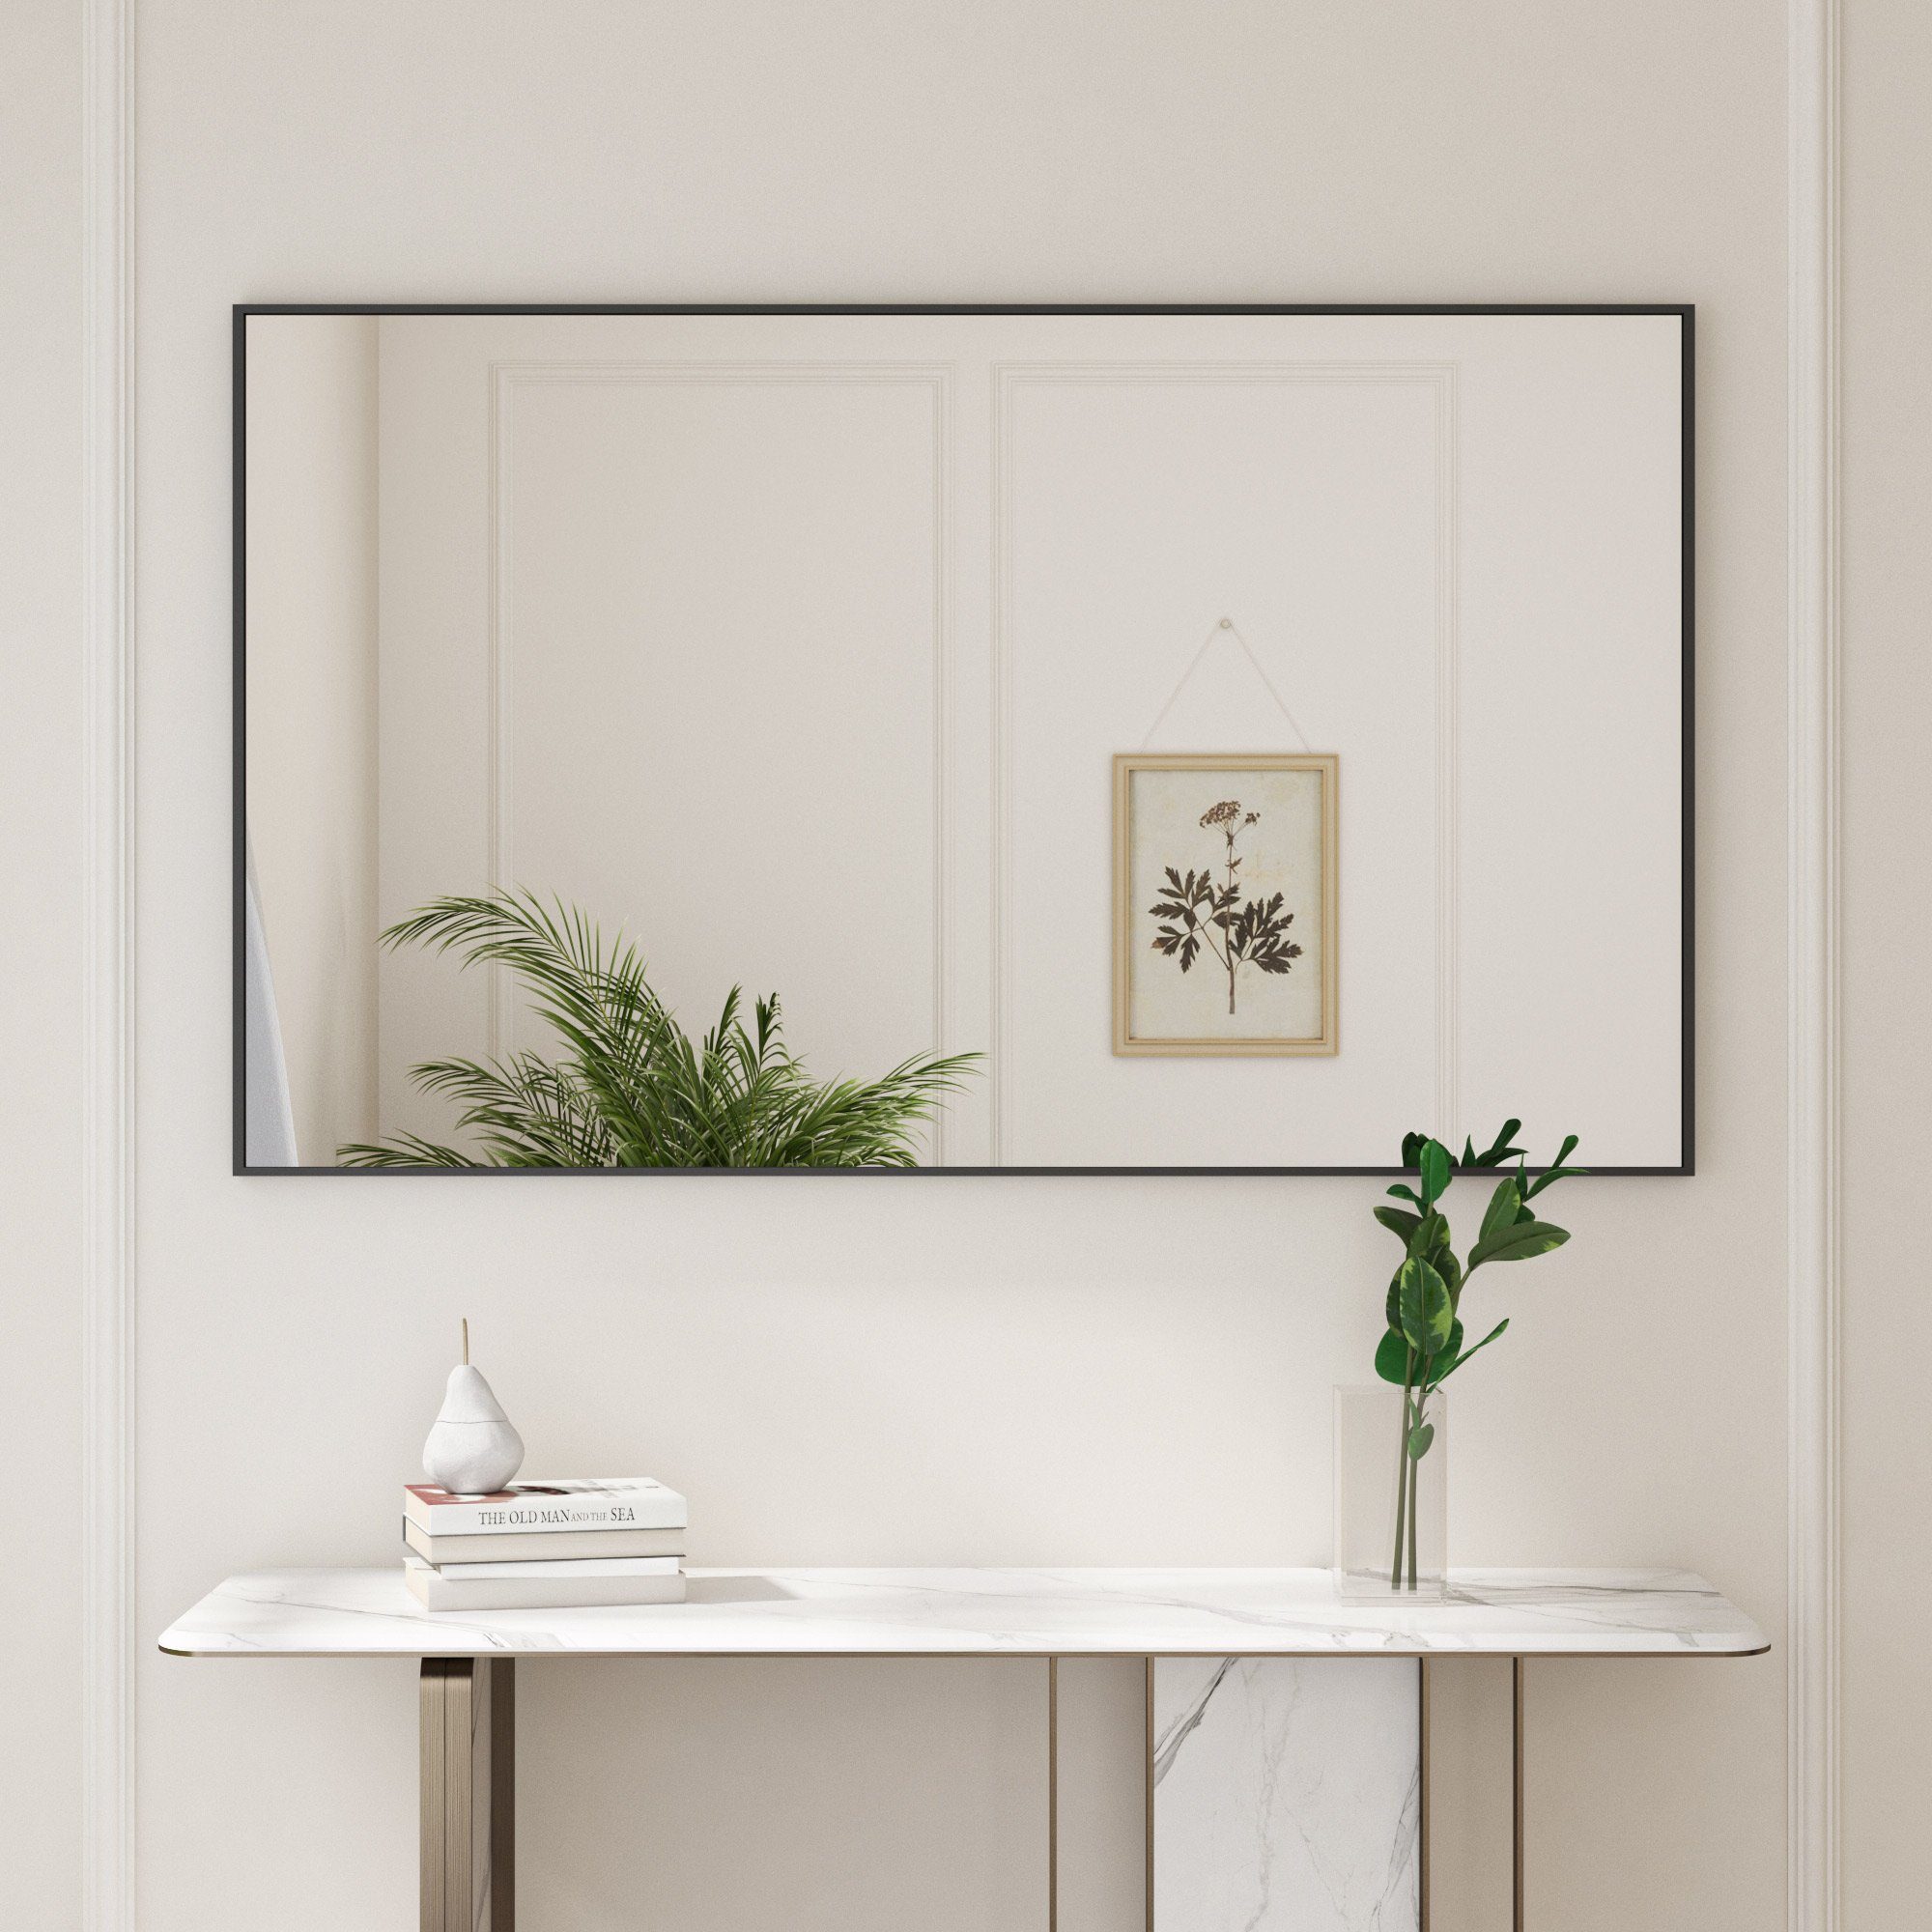 Boromal Wandspiegel groß 100x60cm Spiegel Flur Flurspiegel modern Schwarz mit Alurahmen (Badspiegel eckig, 5mm HD Bleifreier Spiegel), Vertikal, Horizontal, Hängend, Wand gelehnt